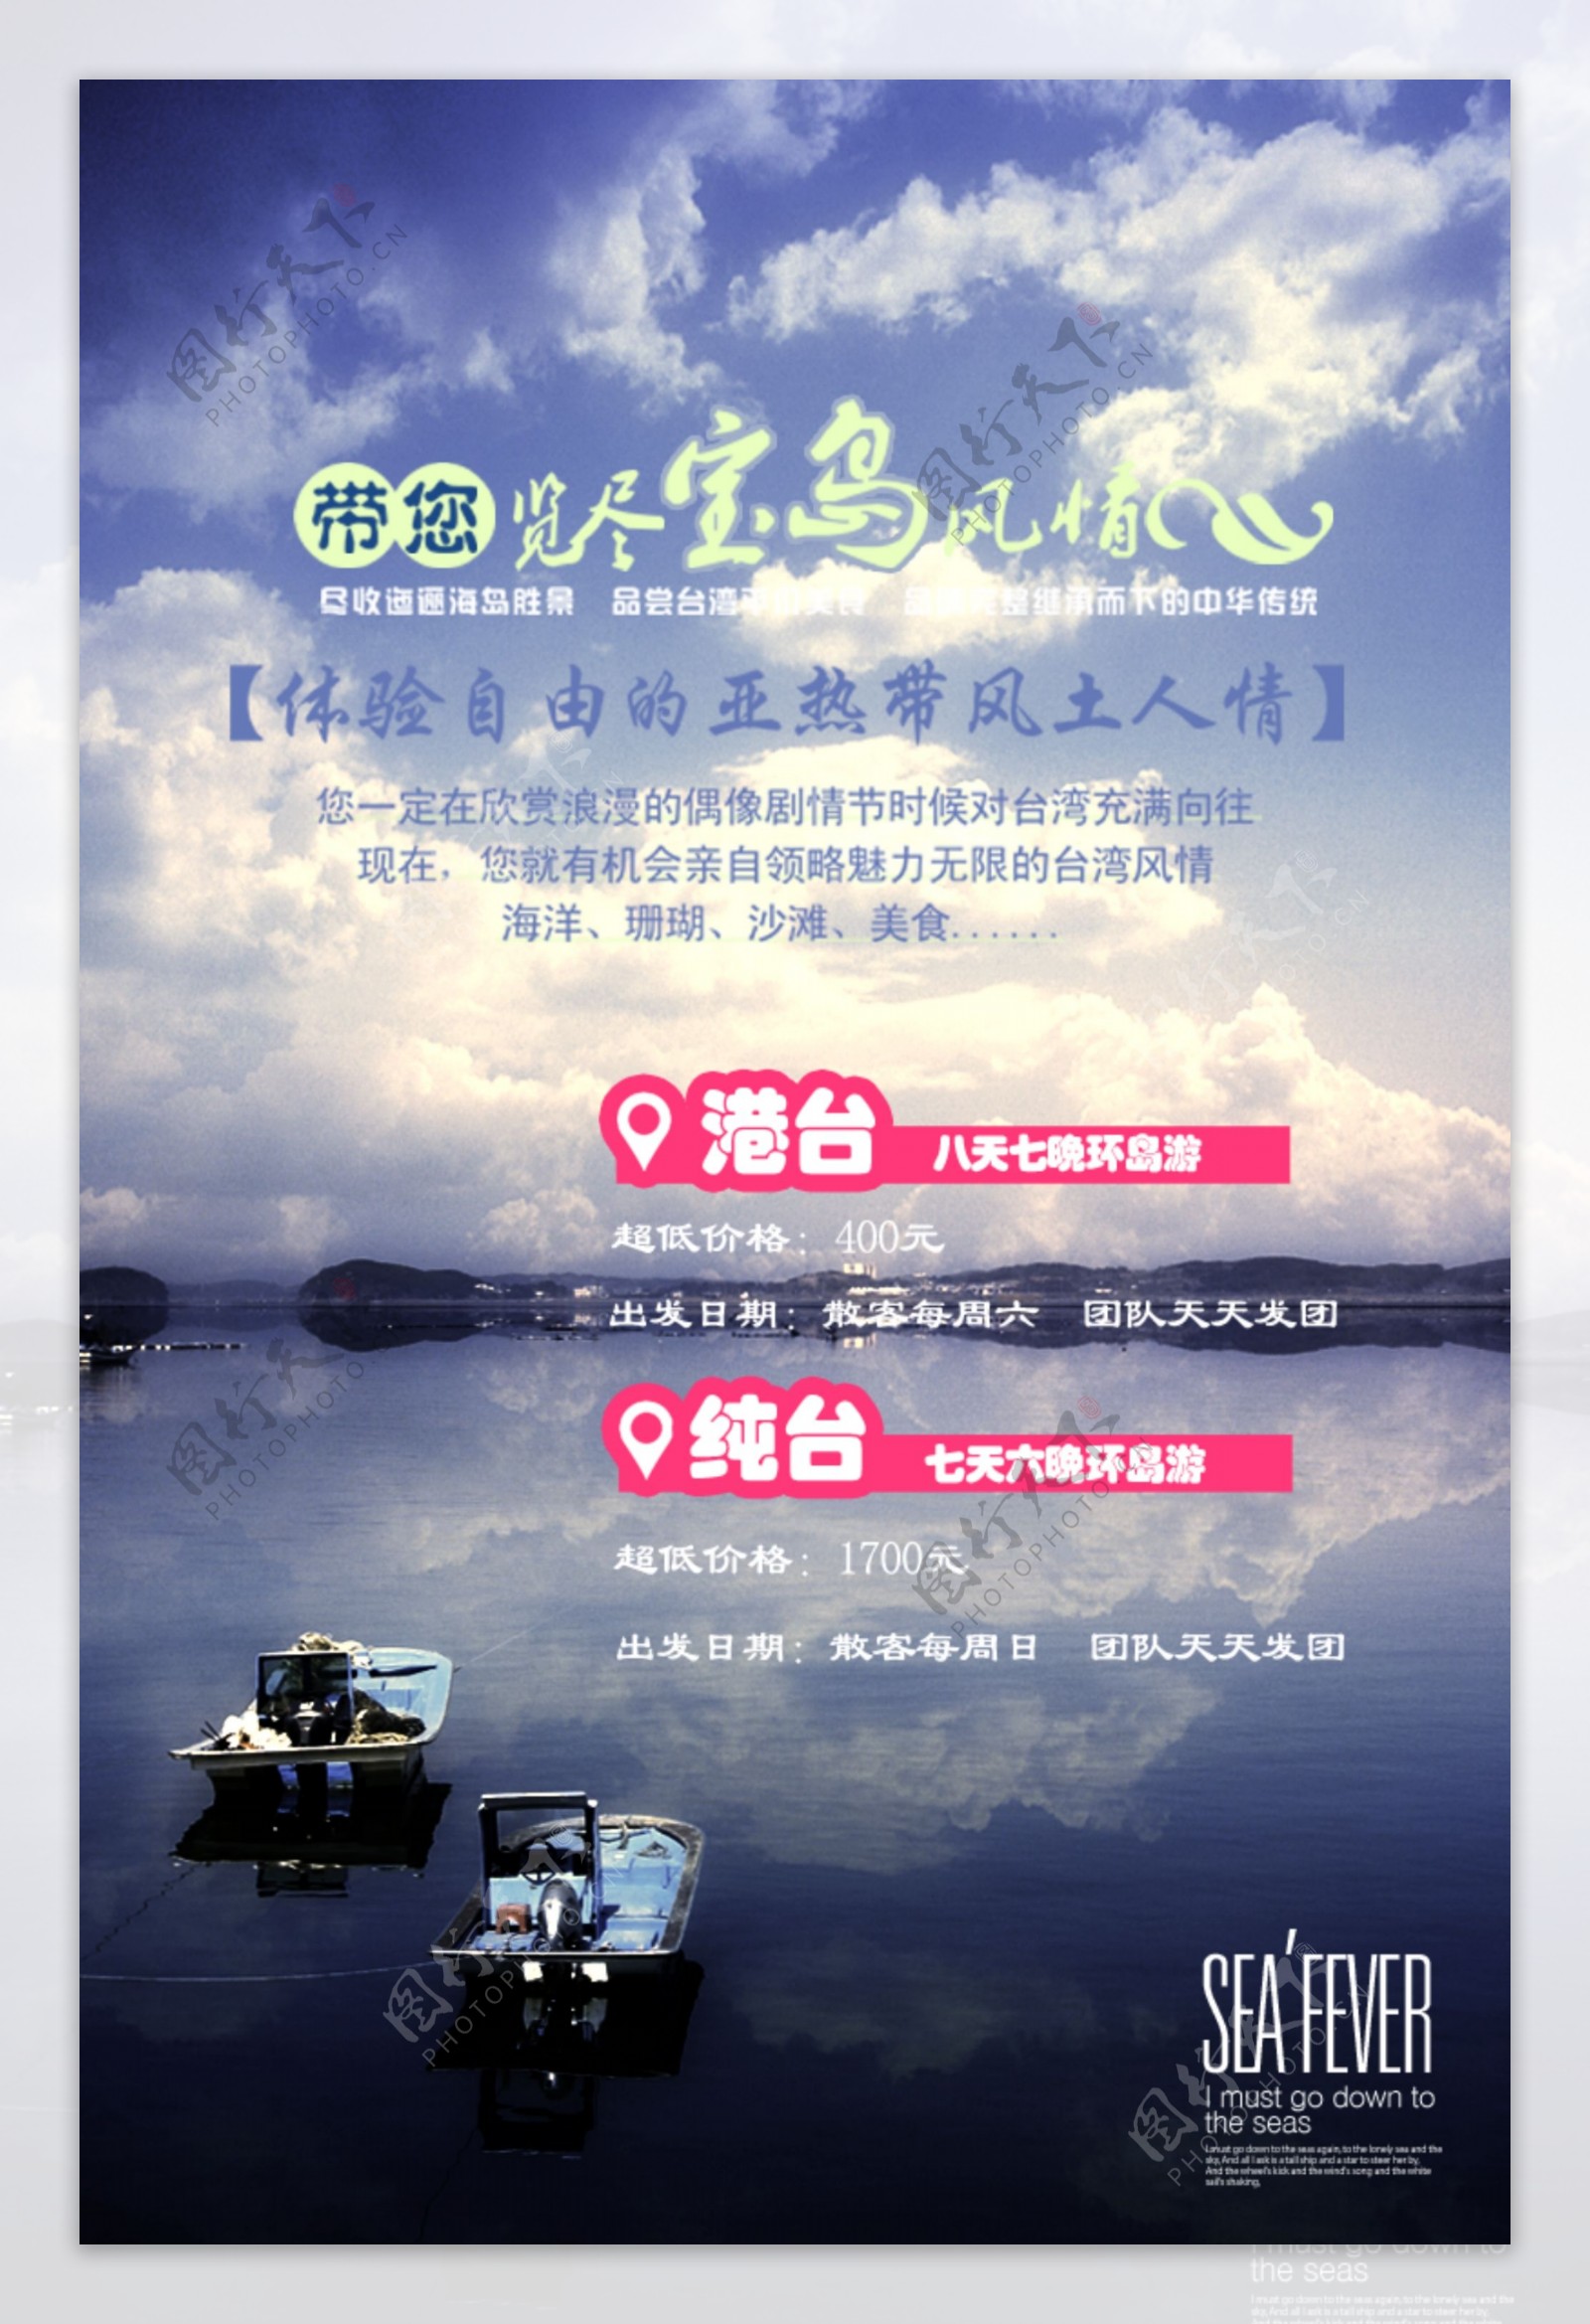 台湾旅游广告